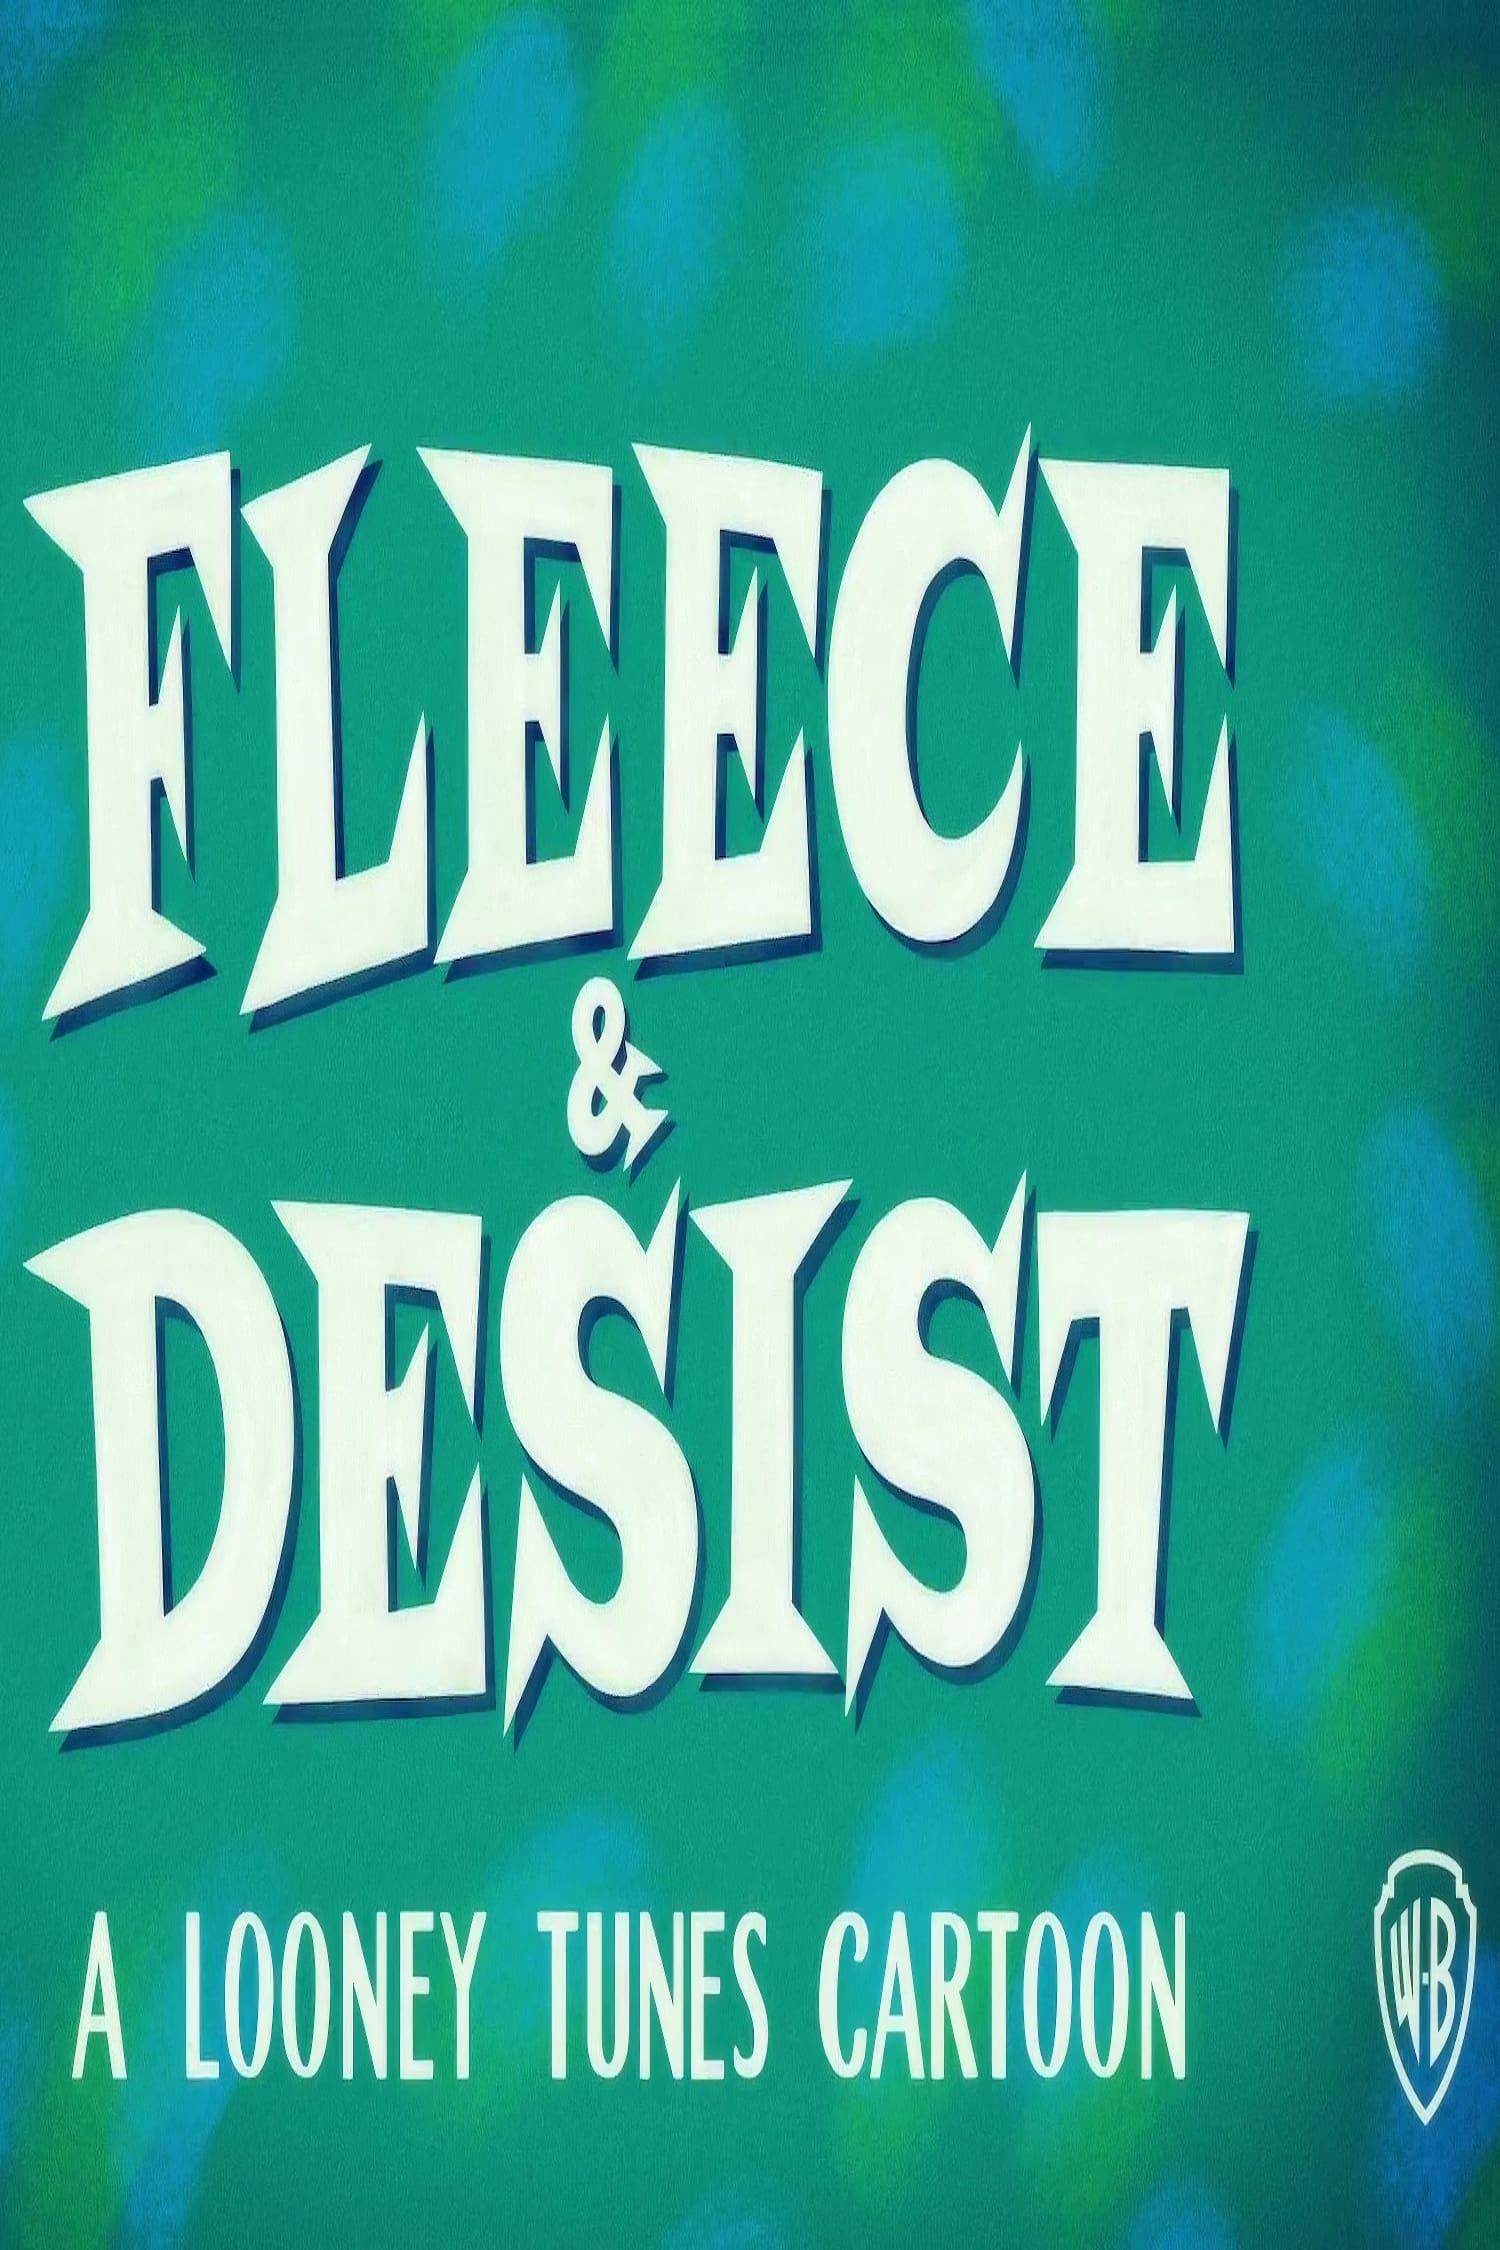 Fleece & Desist poster